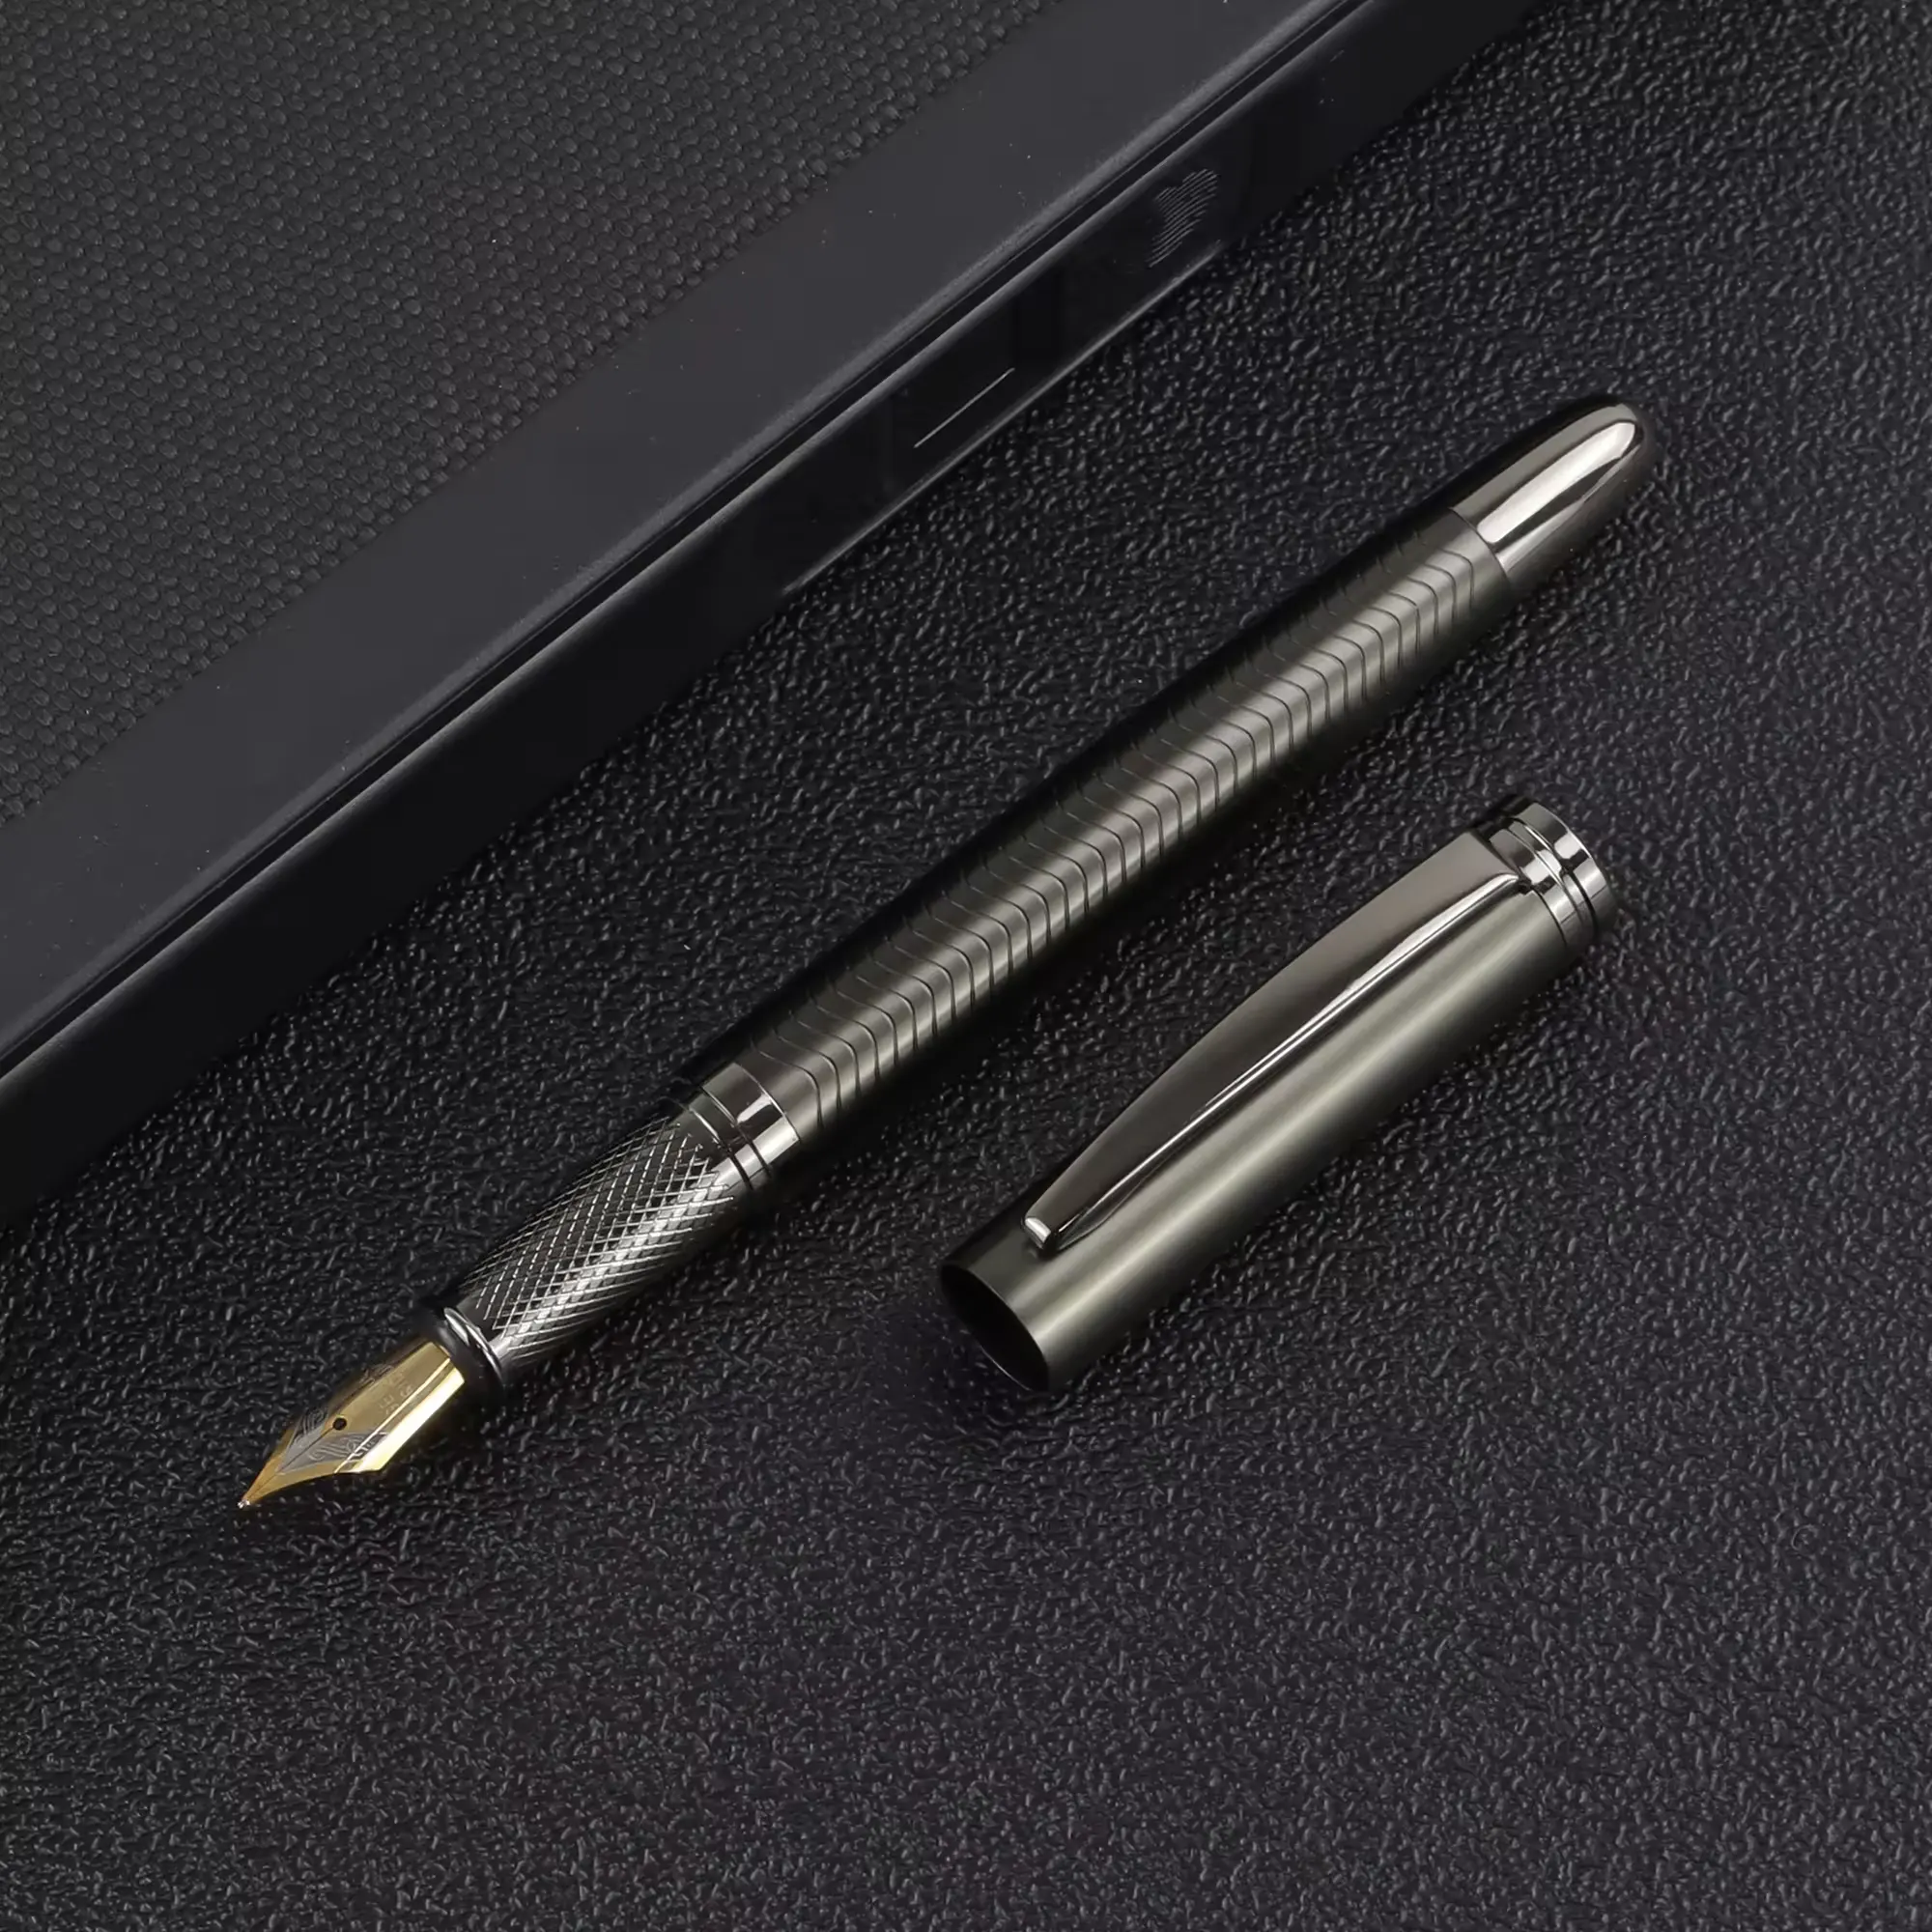 Nuevo bolígrafo grabado de metal, bolígrafo de regalo publicitario, bolígrafo de escultura comercial de gama alta, LOGOTIPO de impresión